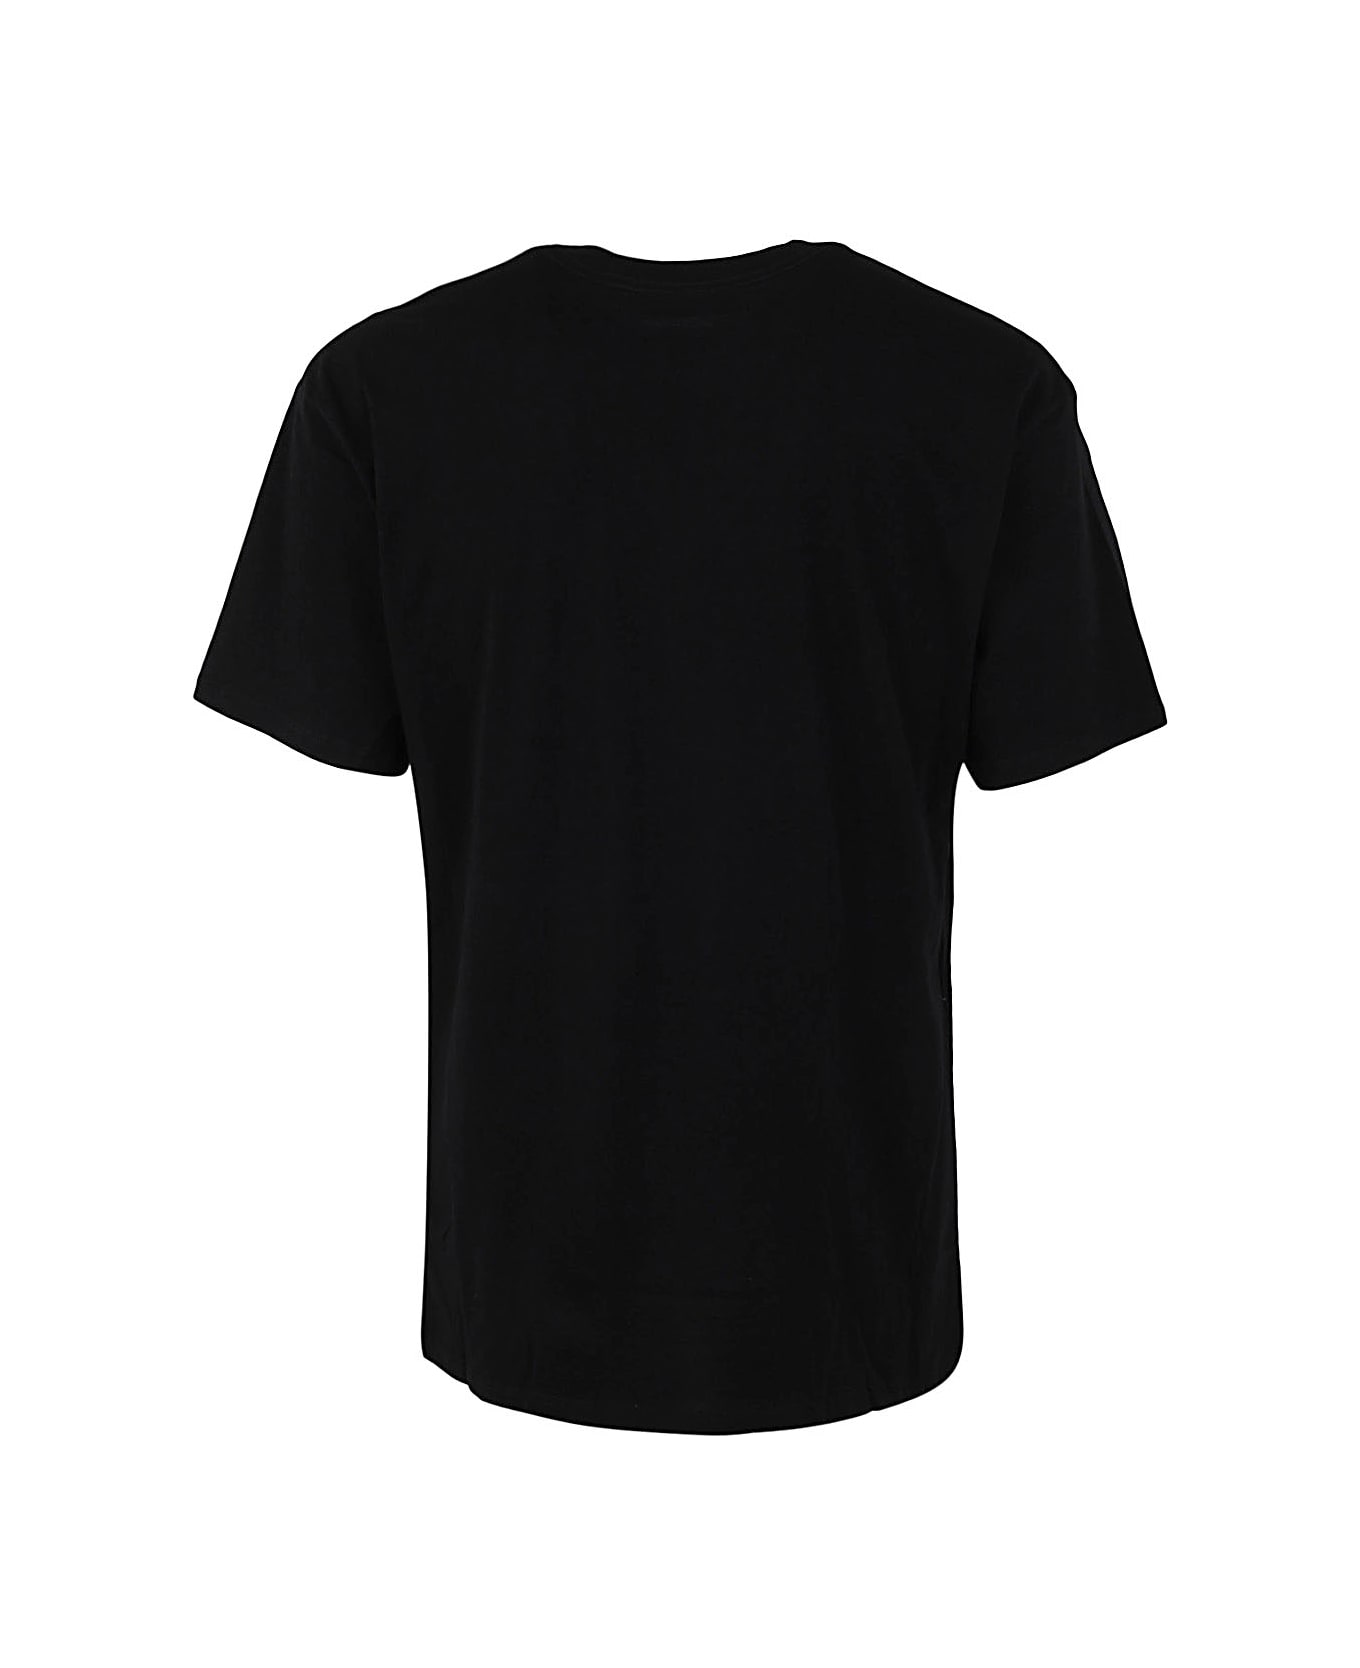 Nahmias Psychedelic T-shirt - Blk Black